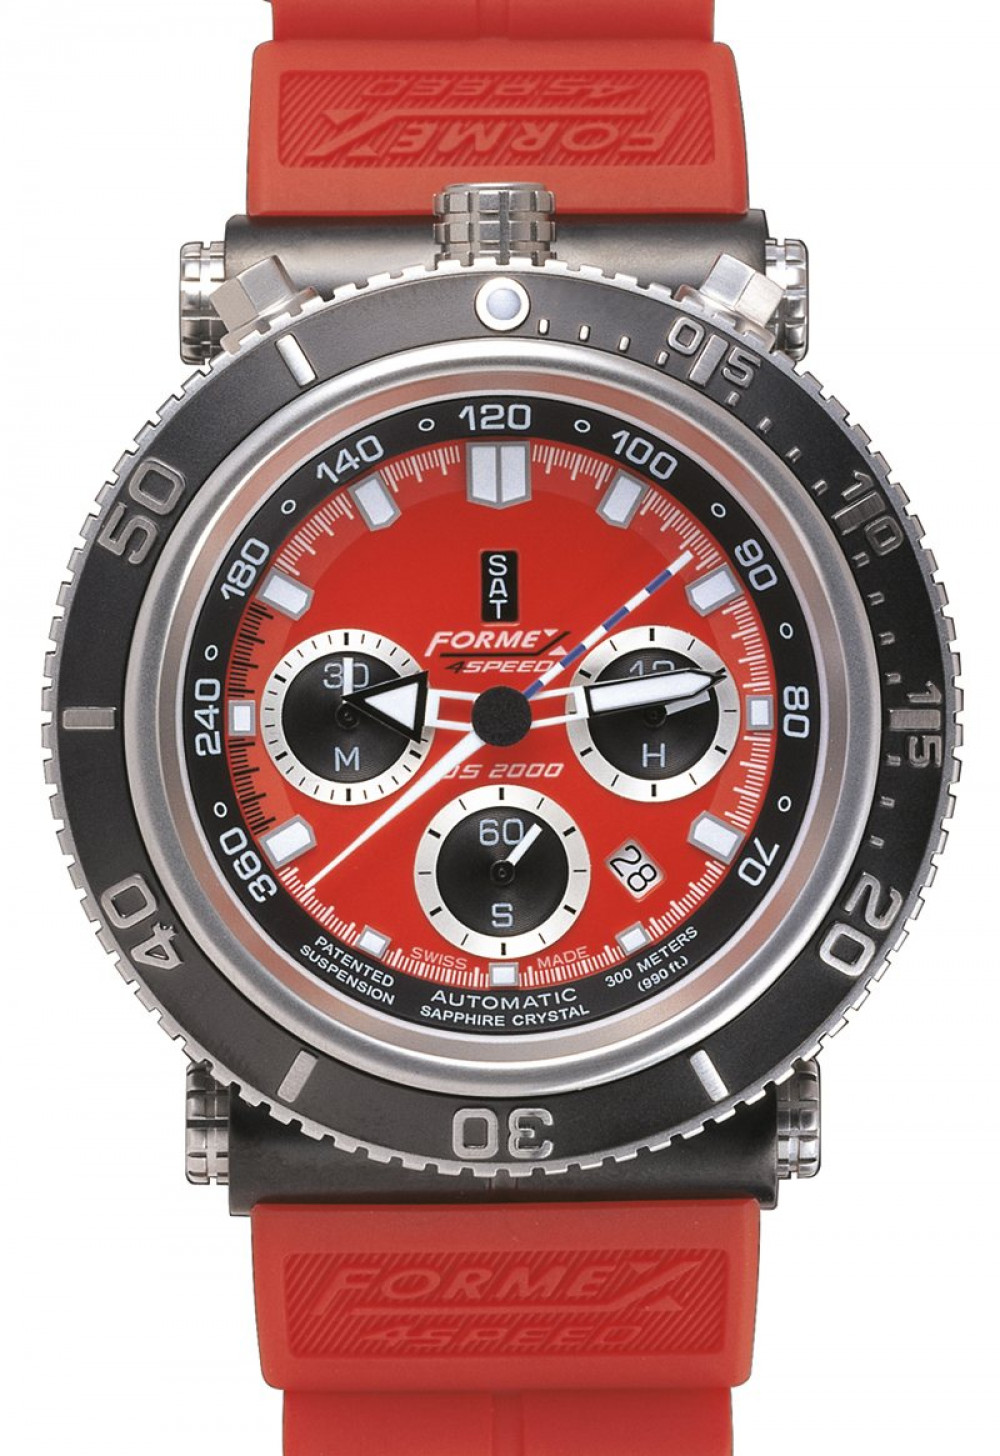 Zegarek firmy Formex 4 Speed, model Diver-Chrono Automatic + Tachy